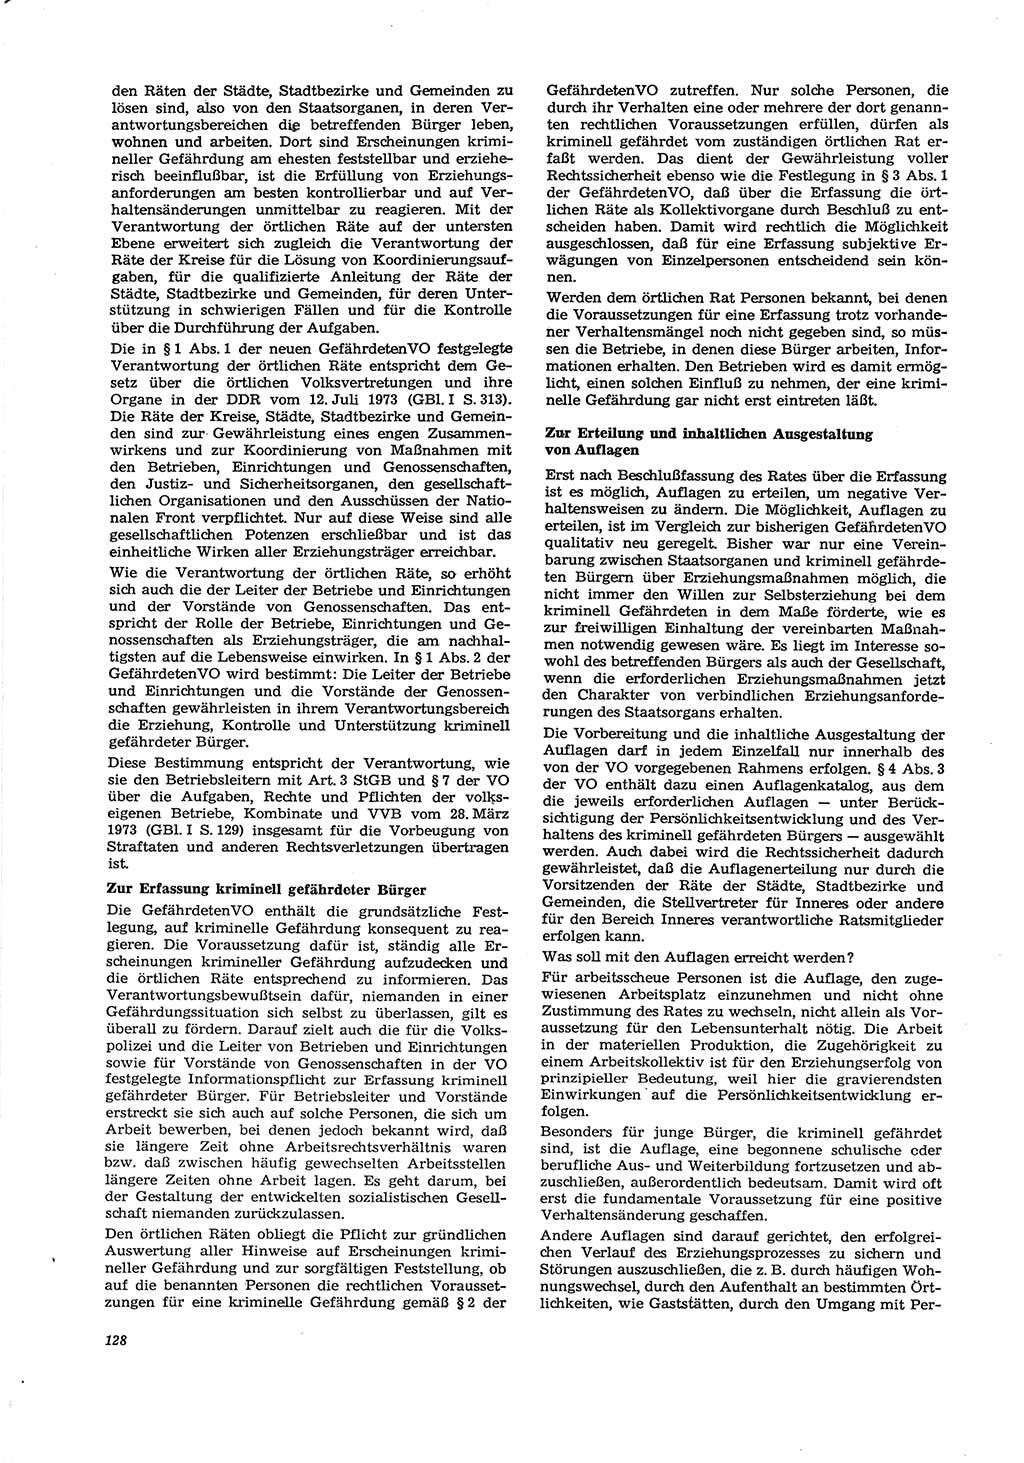 Neue Justiz (NJ), Zeitschrift für Recht und Rechtswissenschaft [Deutsche Demokratische Republik (DDR)], 29. Jahrgang 1975, Seite 128 (NJ DDR 1975, S. 128)